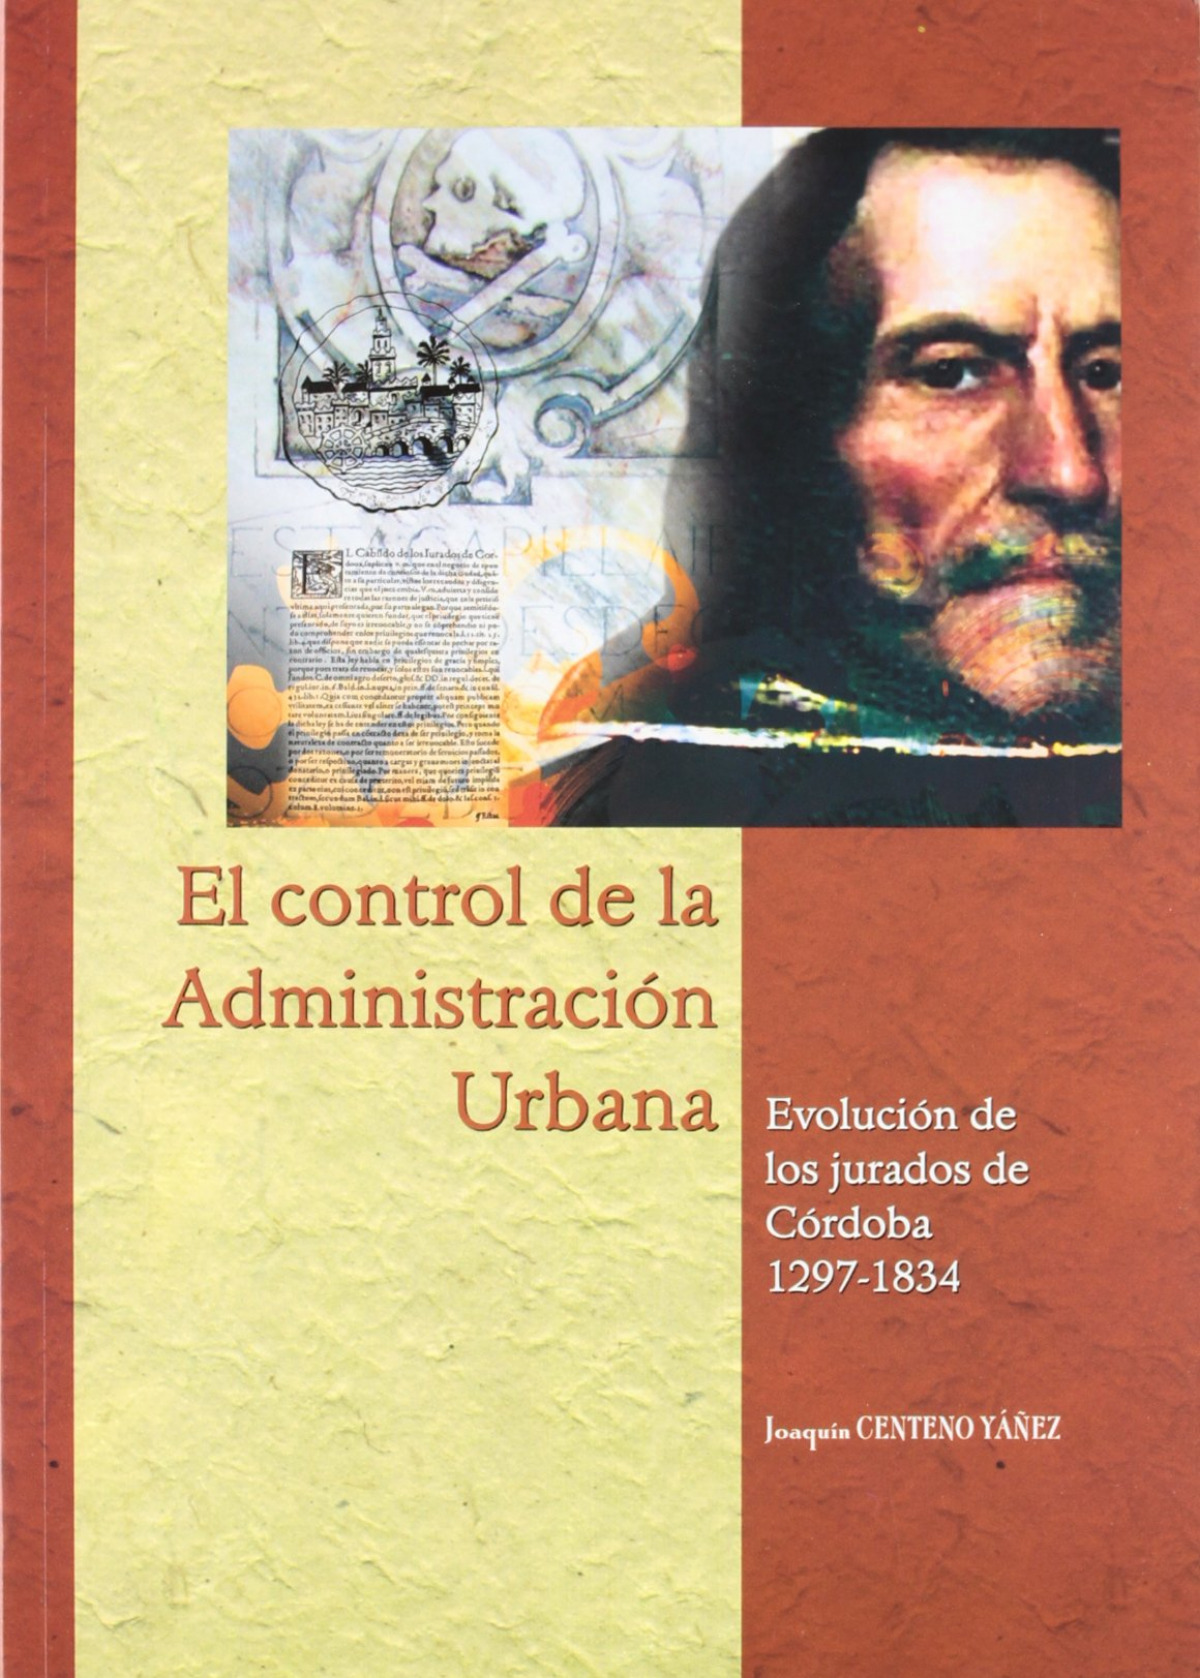 El control de la administración urbana. Evolución de los jurados de Có - Centeno Yáñez, Joaquín